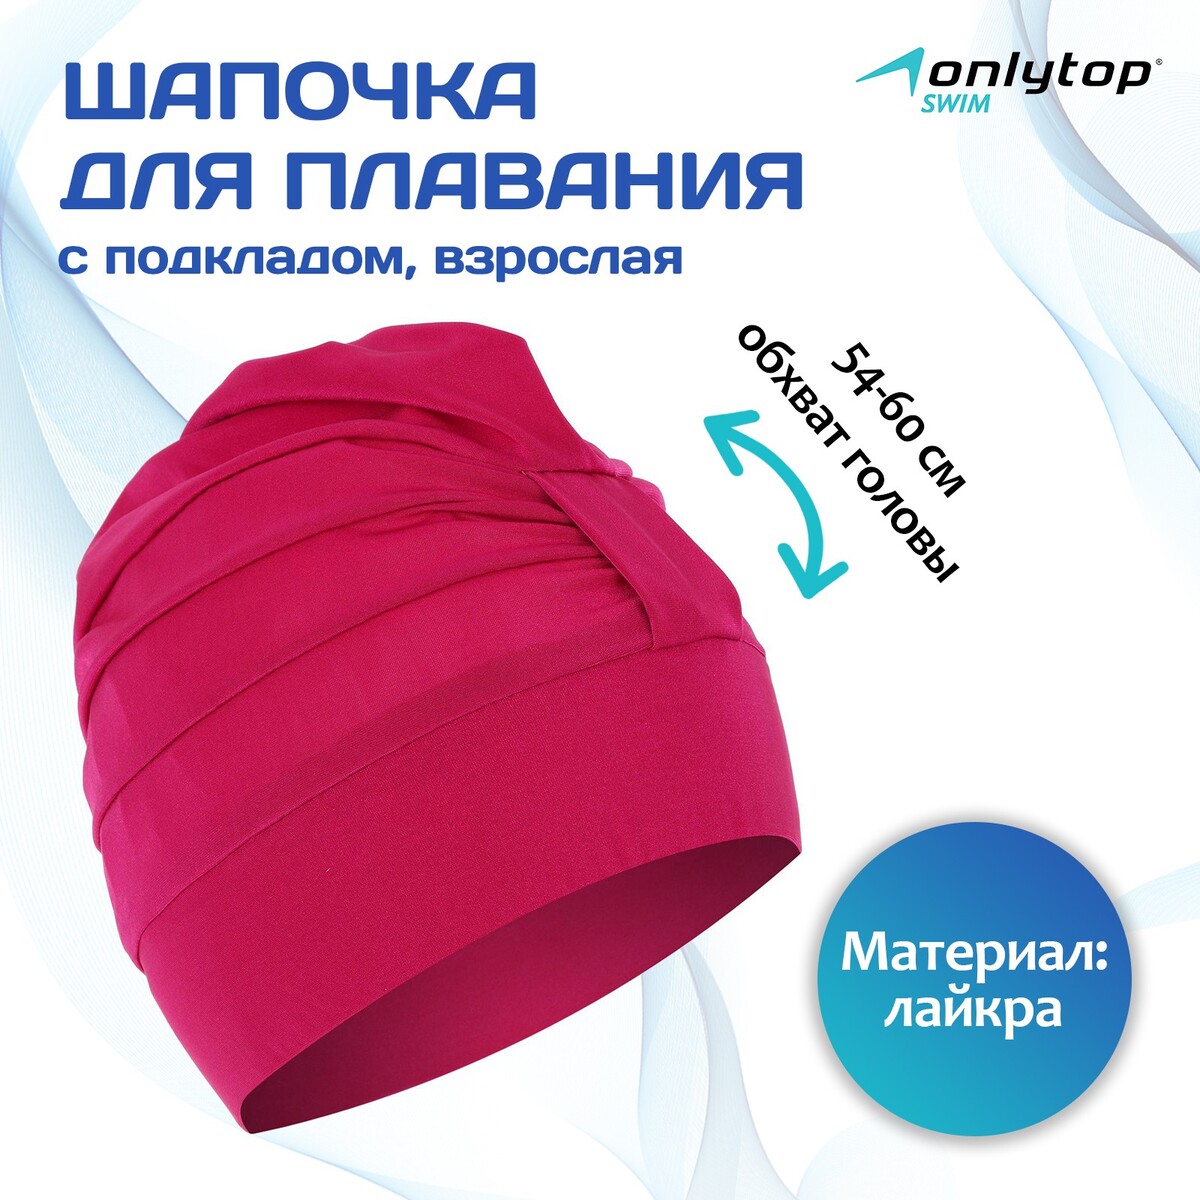 Шапочка для плавания взрослая onlytop, тканевая, обхват 54-60 см, цвет фуксия шапочка для плавания atemi pu 130 тканевая с полиуретановым покрытием розовый 3d